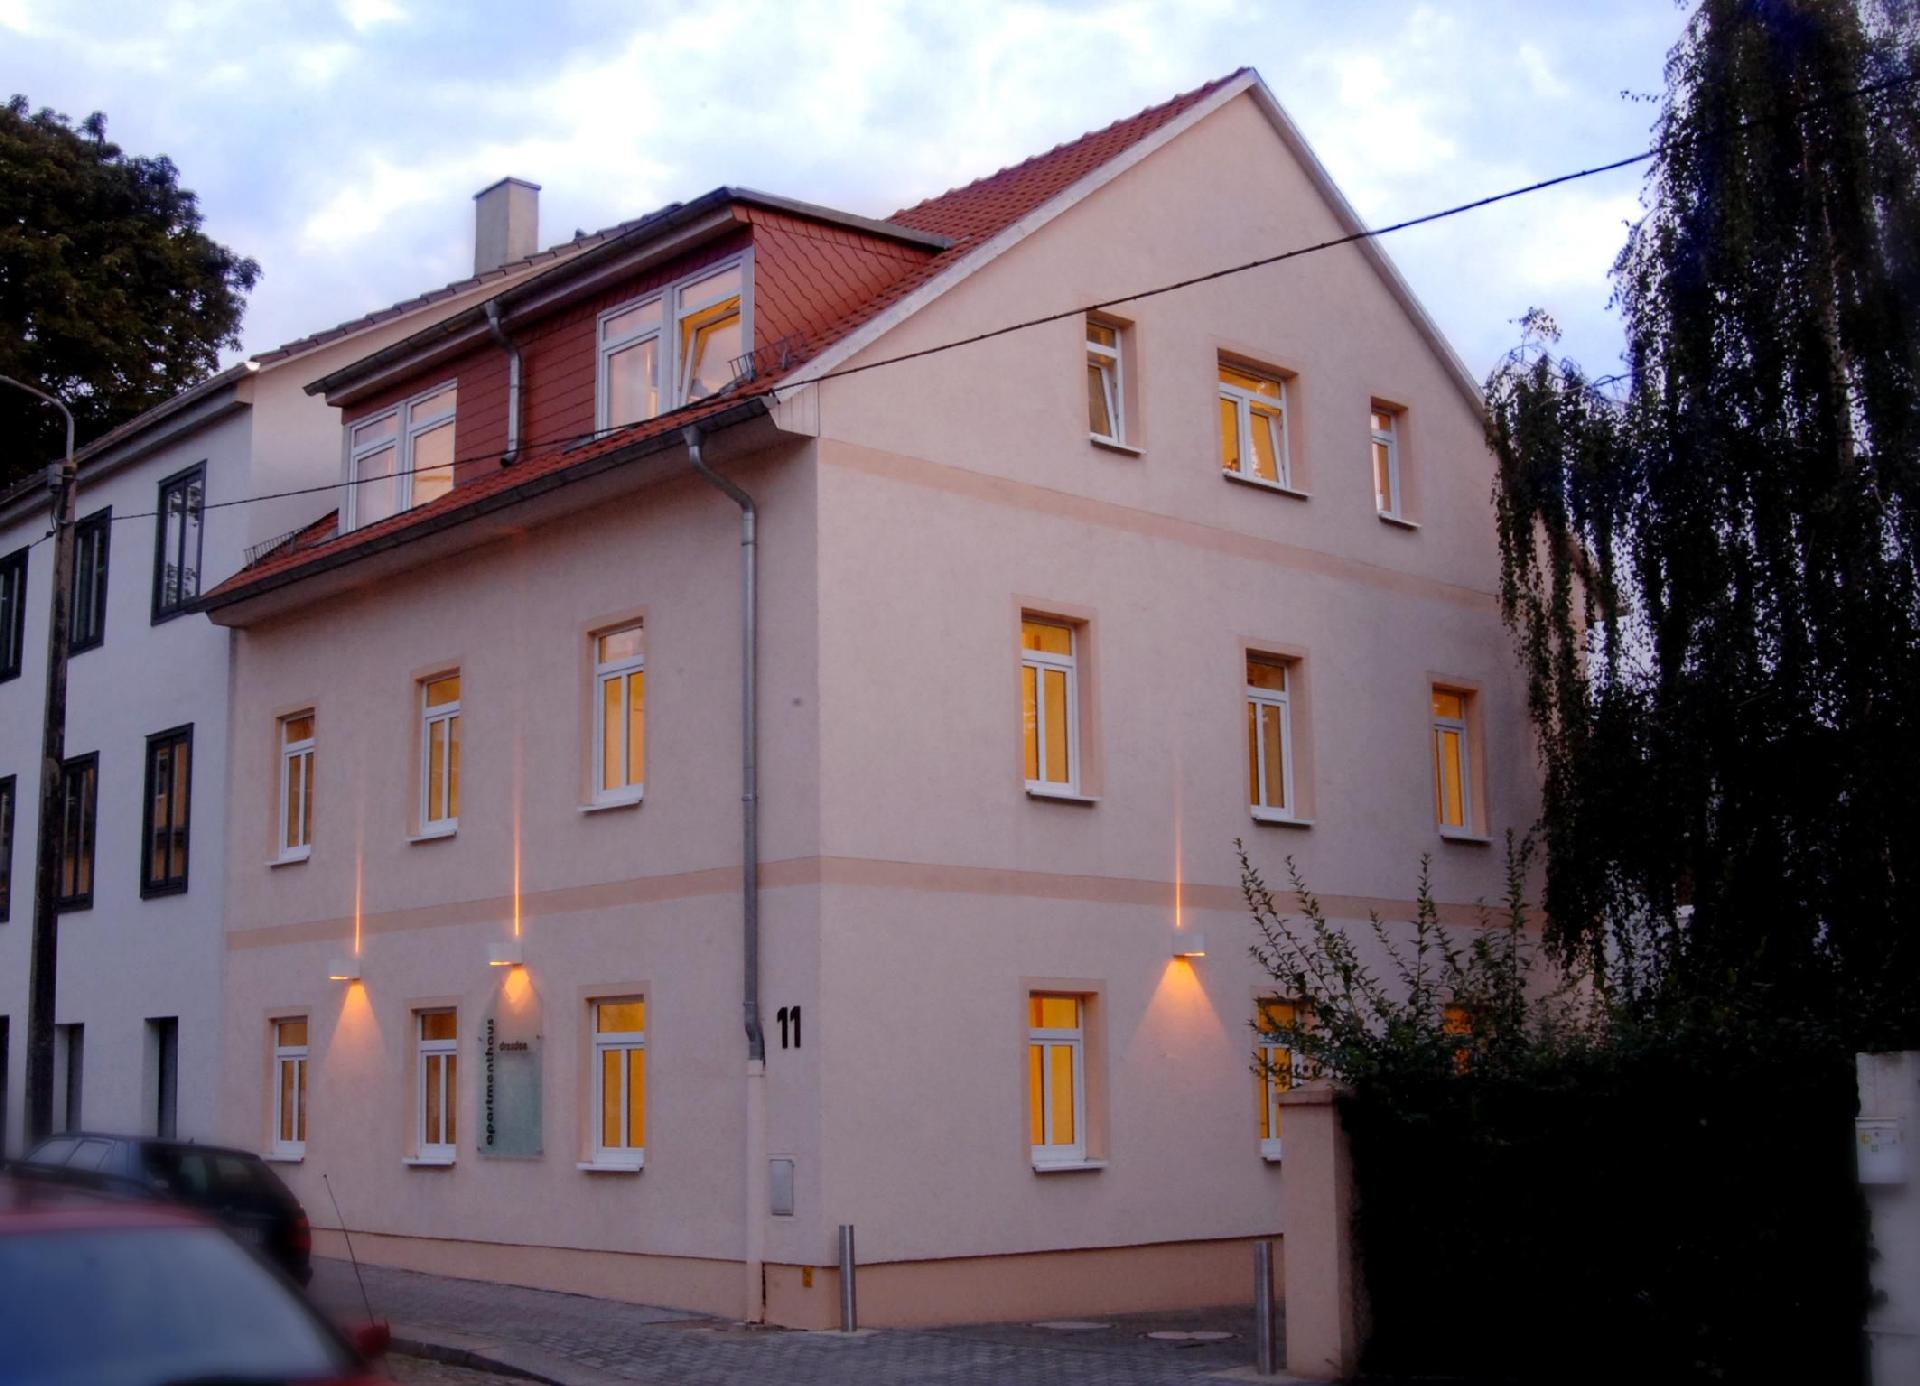 Ferienwohnung für 4 Personen ca. 65 m² i  in Sachsen